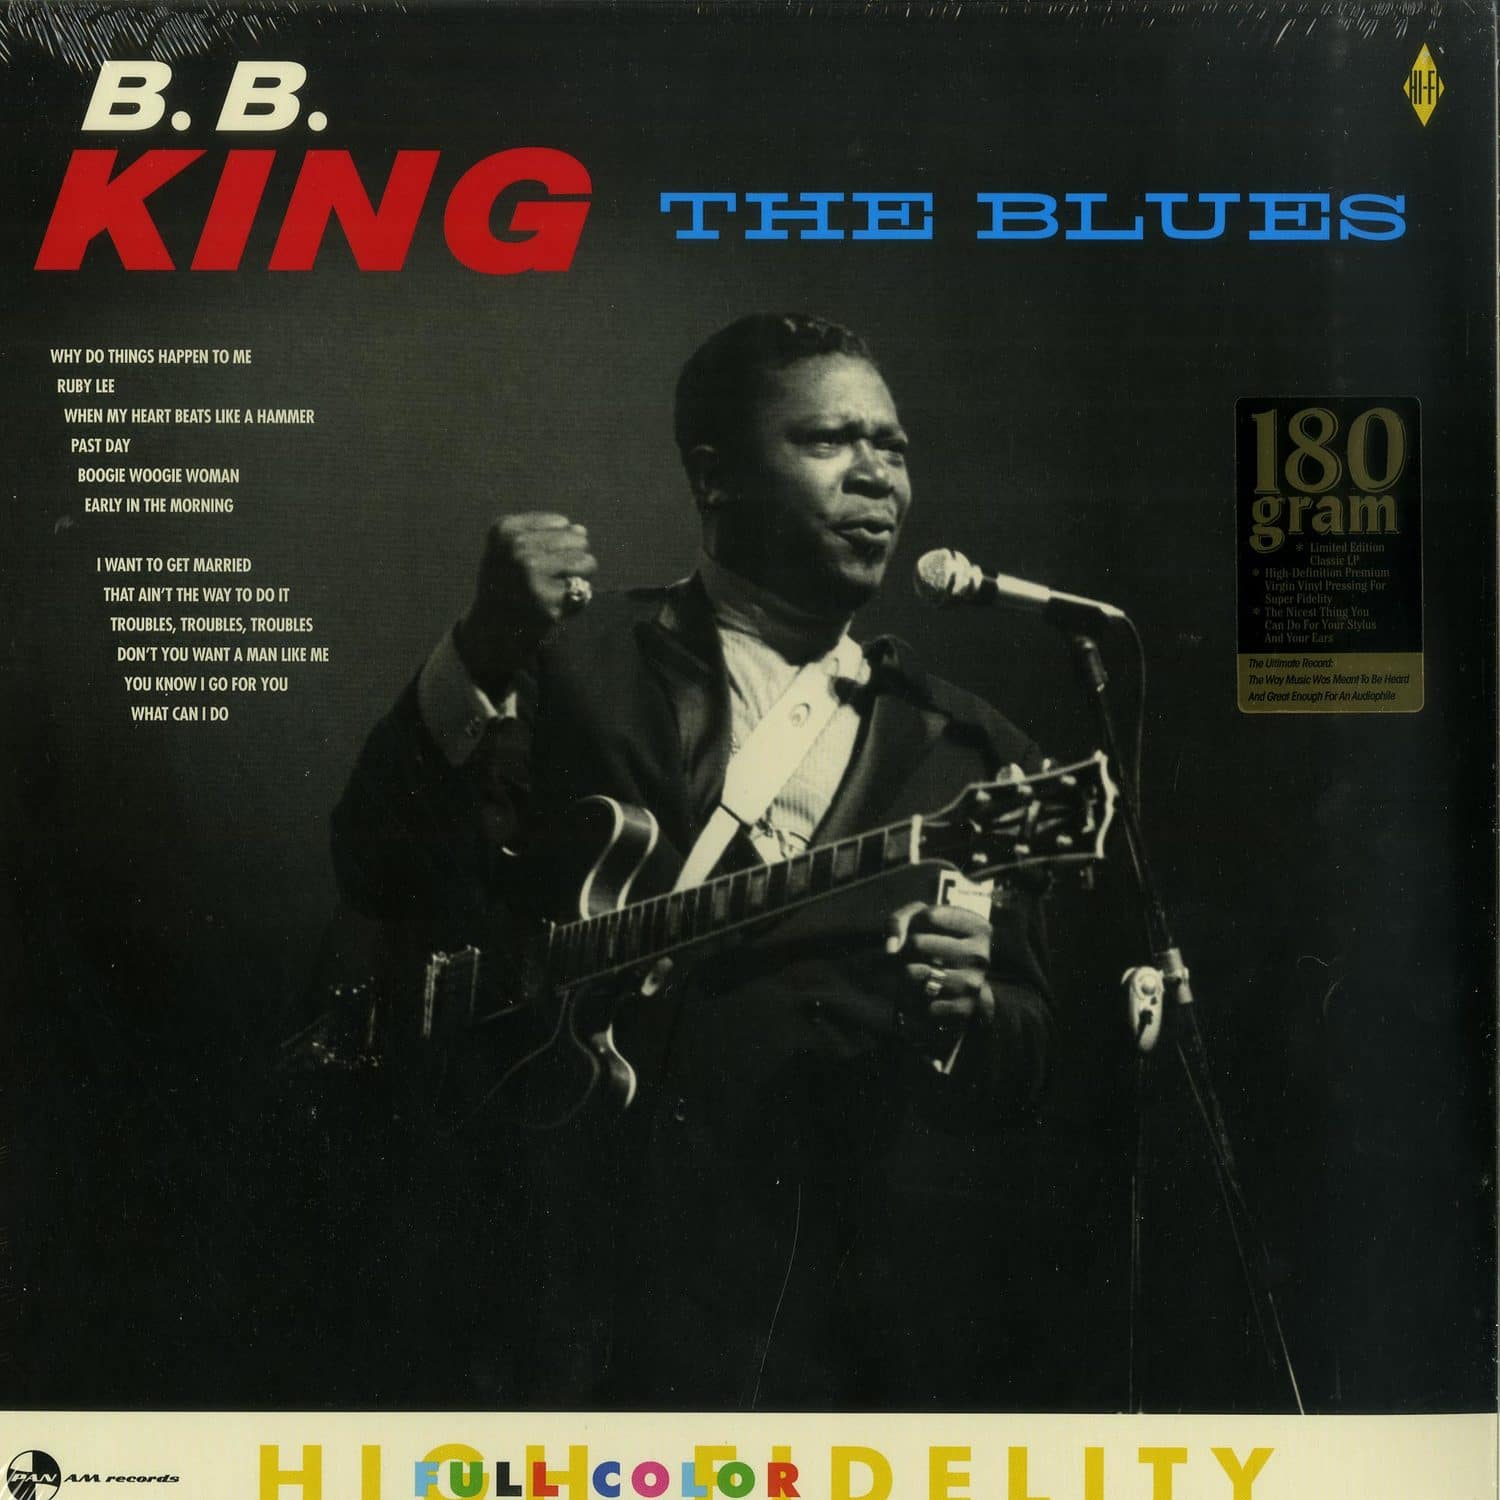 B.B. King - THE BLUES 